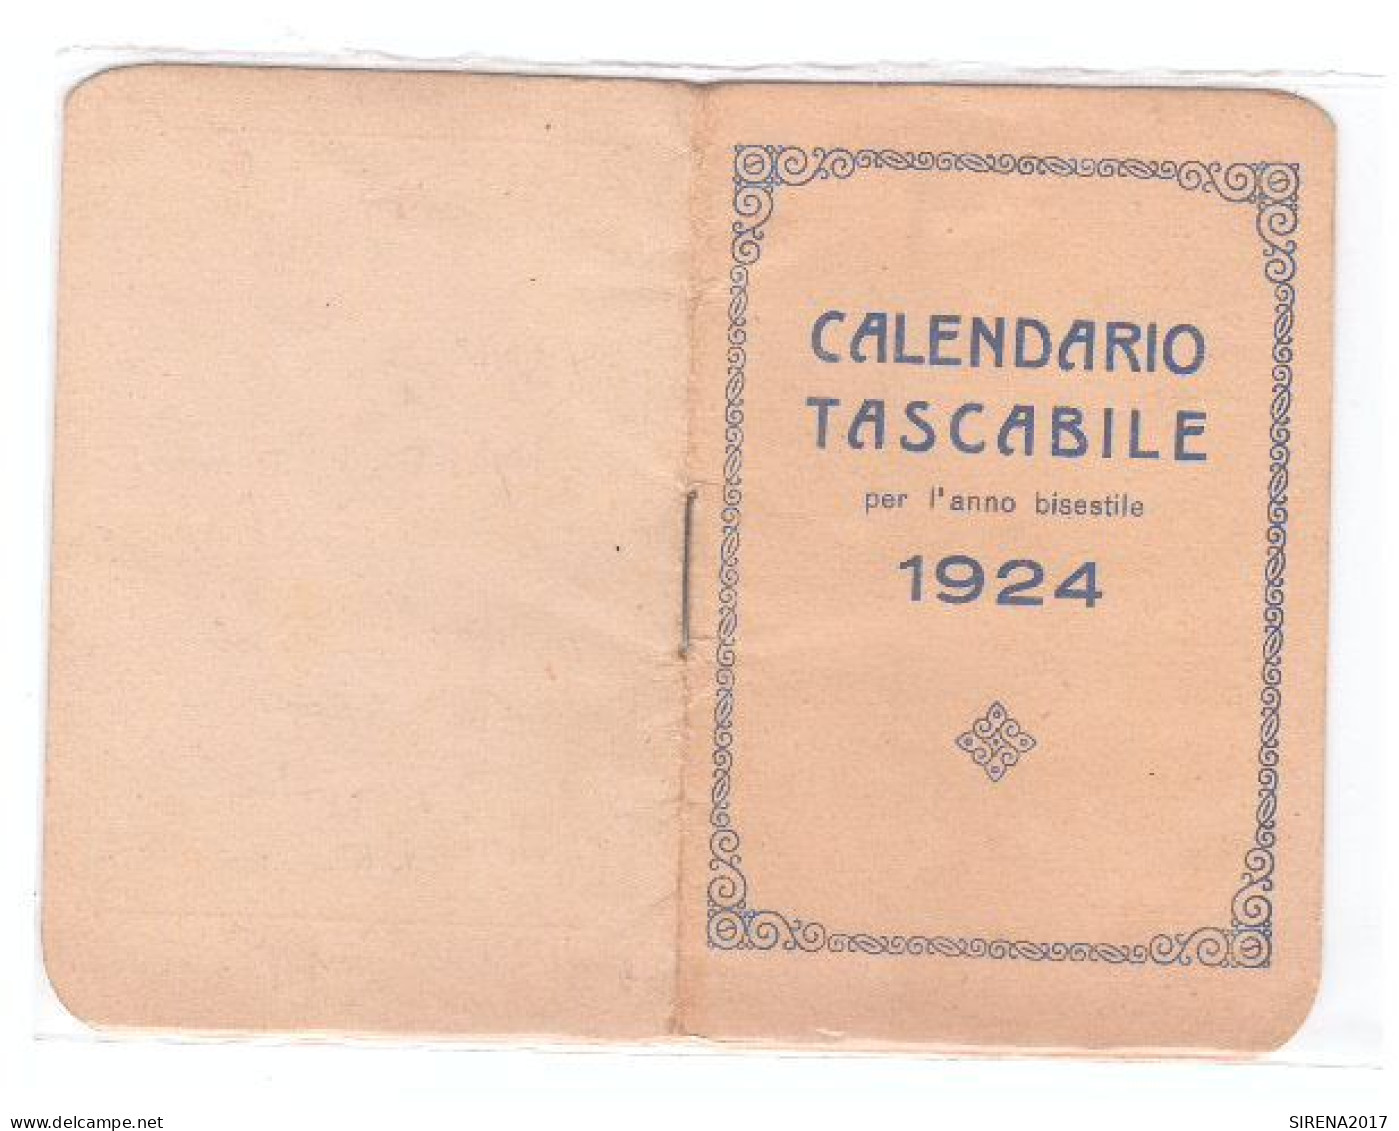 CALENDARIO TASCABILE PER L'ANNO BISESTILE 1924 - Small : 1961-70